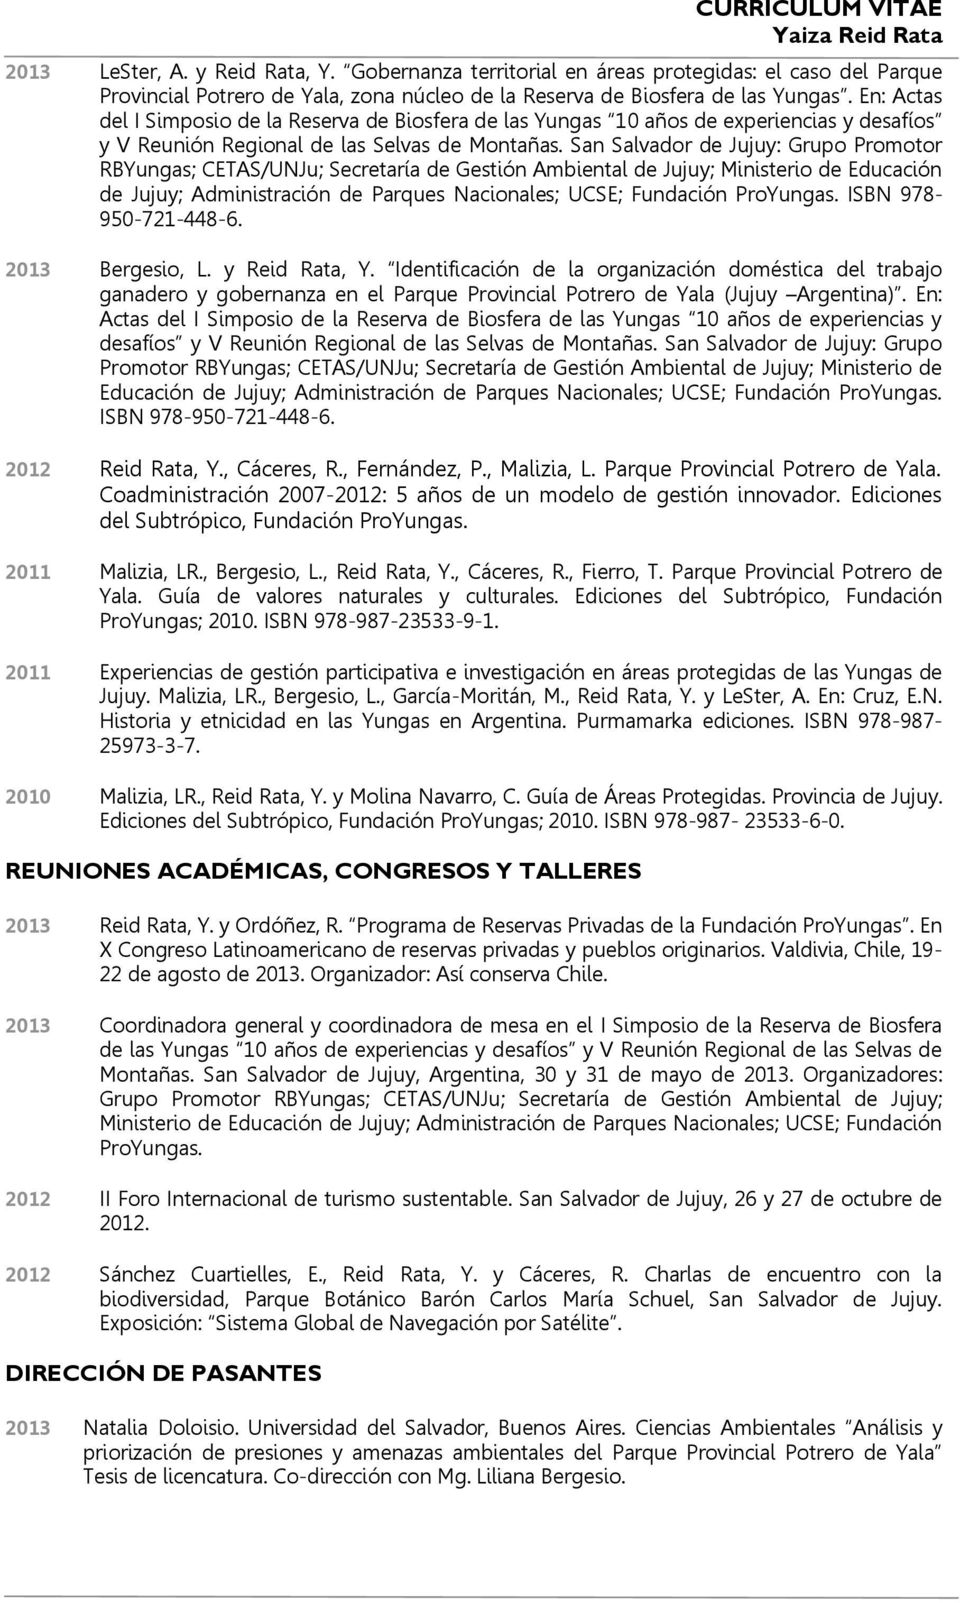 San Salvador de Jujuy: Grupo Promotor RBYungas; CETAS/UNJu; Secretaría de Gestión Ambiental de Jujuy; Ministerio de Educación de Jujuy; Administración de Parques Nacionales; UCSE; Fundación ProYungas.